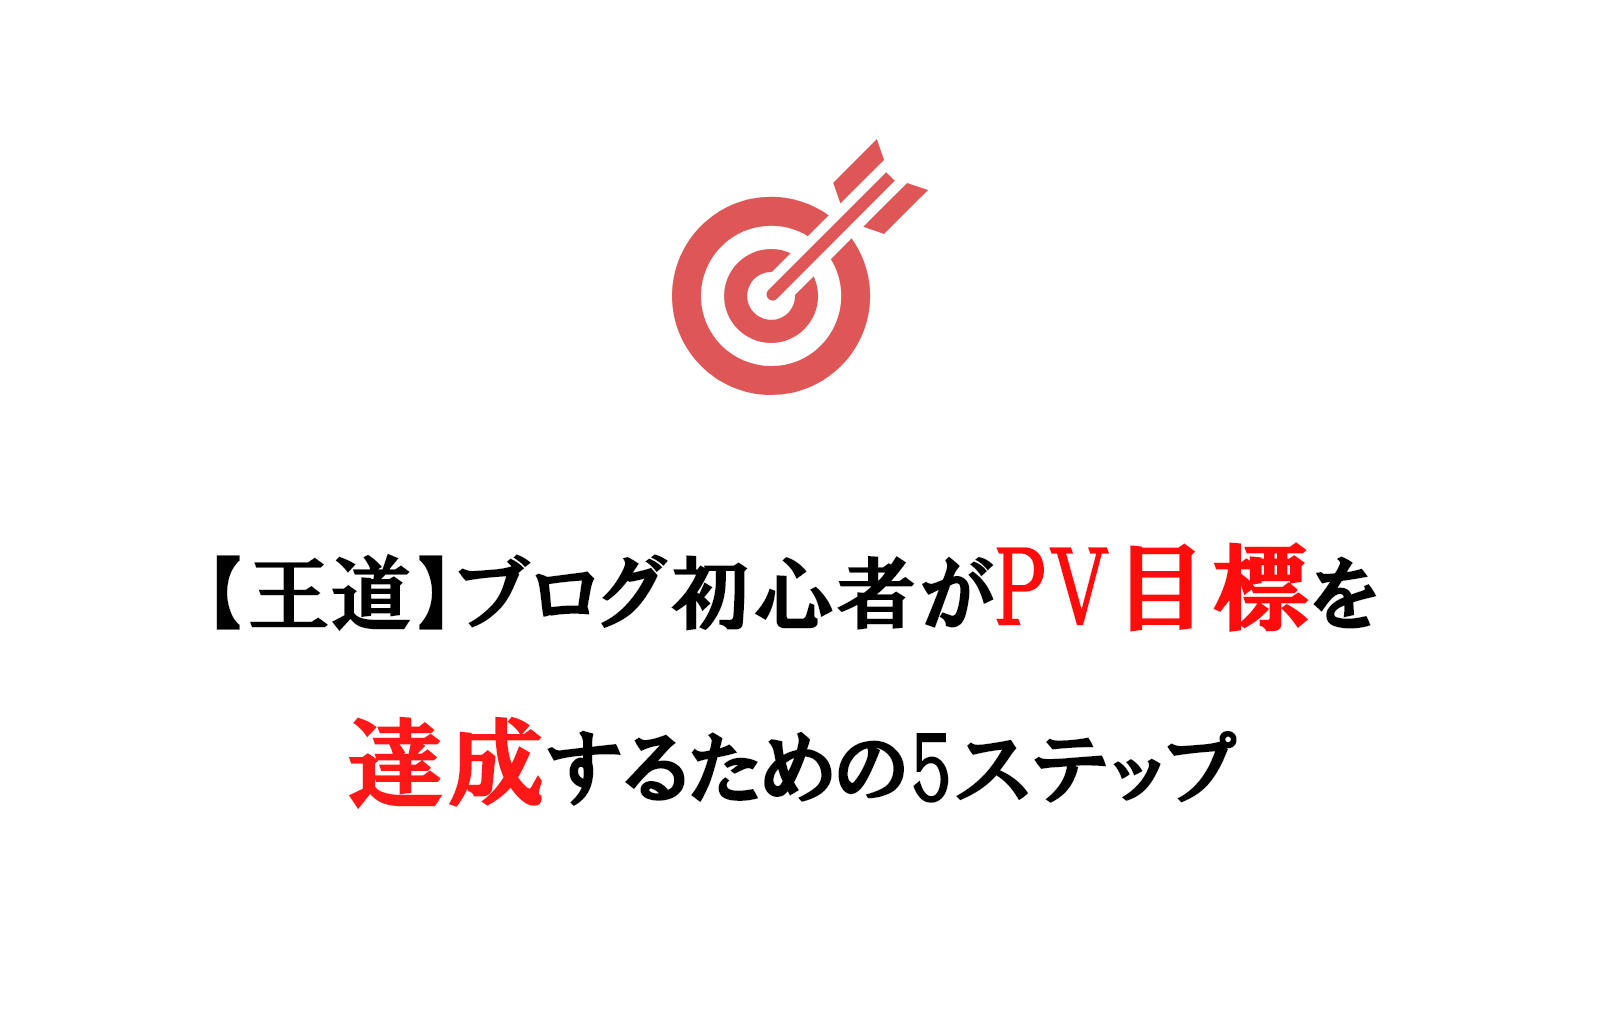 【王道】ブログ初心者がPV目標を達成するための5ステップ